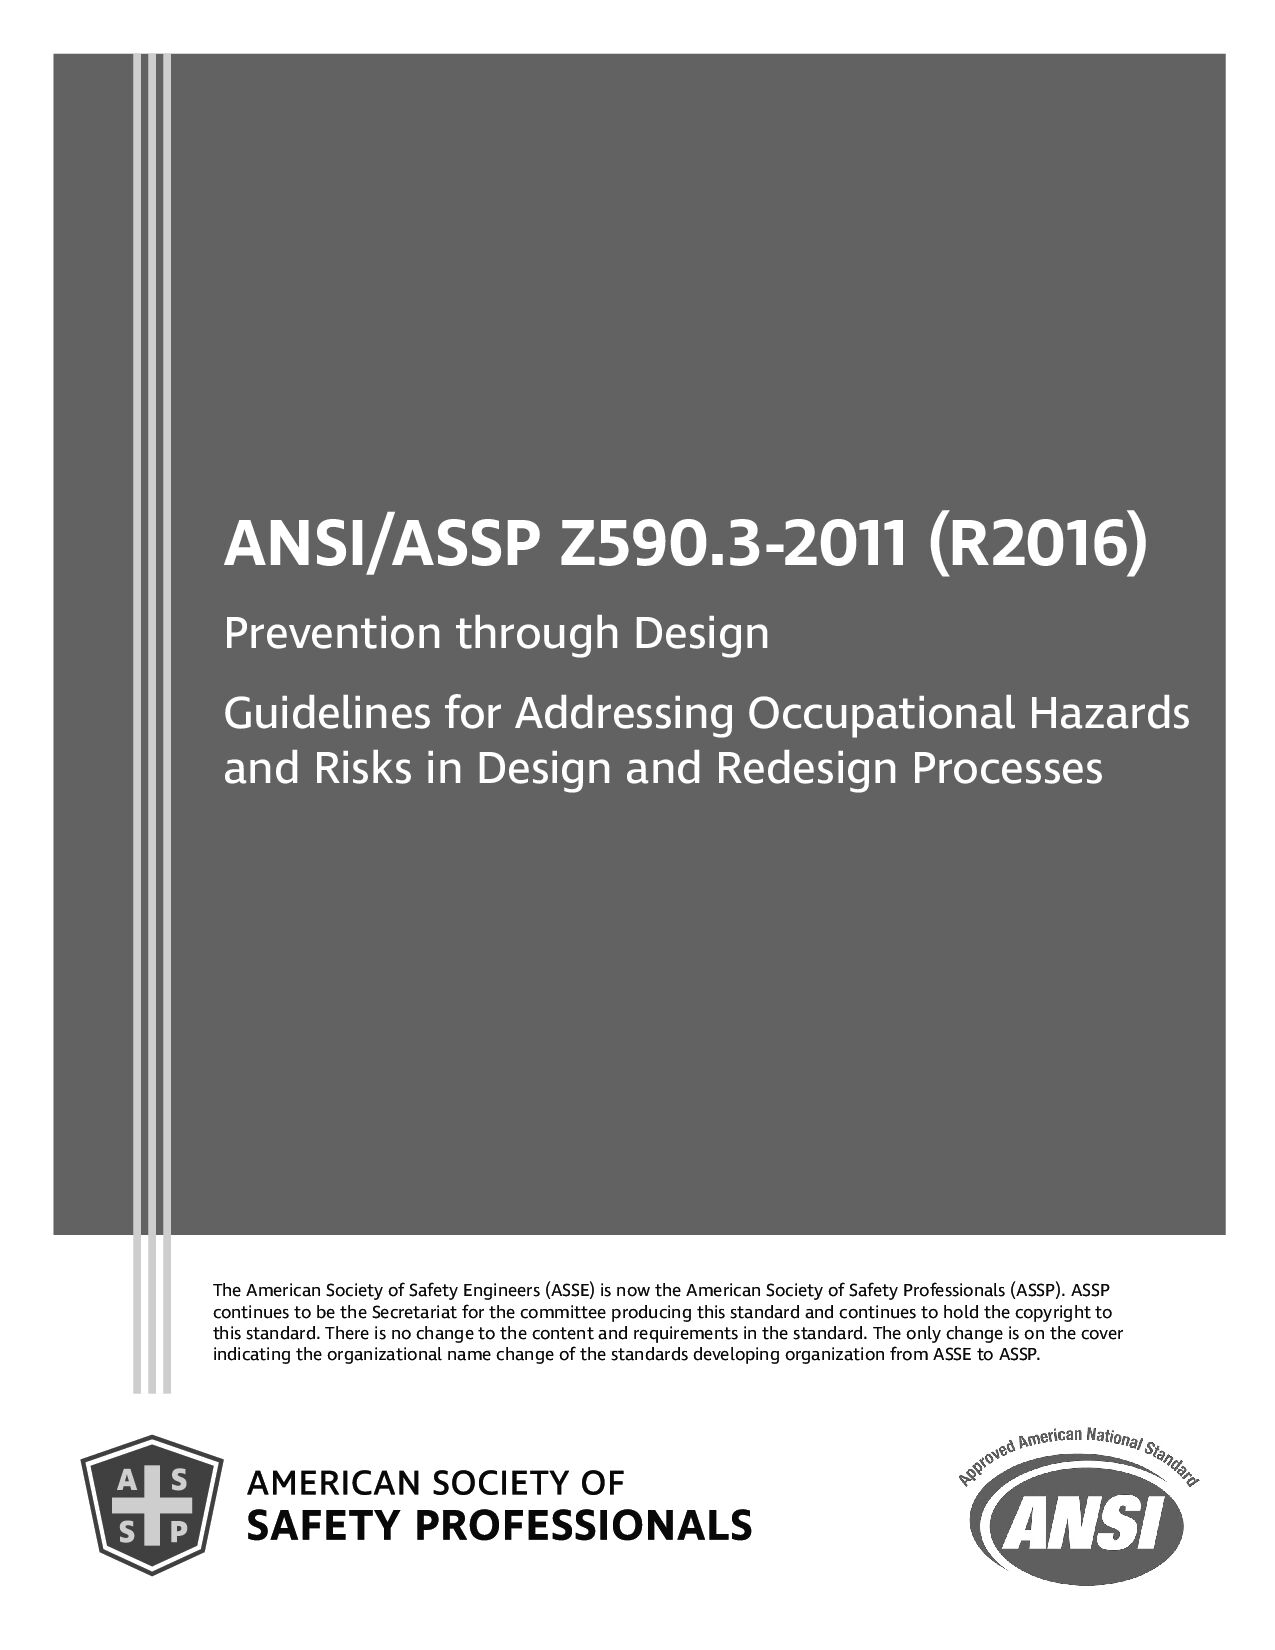 ANSI/ASSP Z590.3-2011 (2016) ANSI ASSE Z590.3-2011(2016)封面图